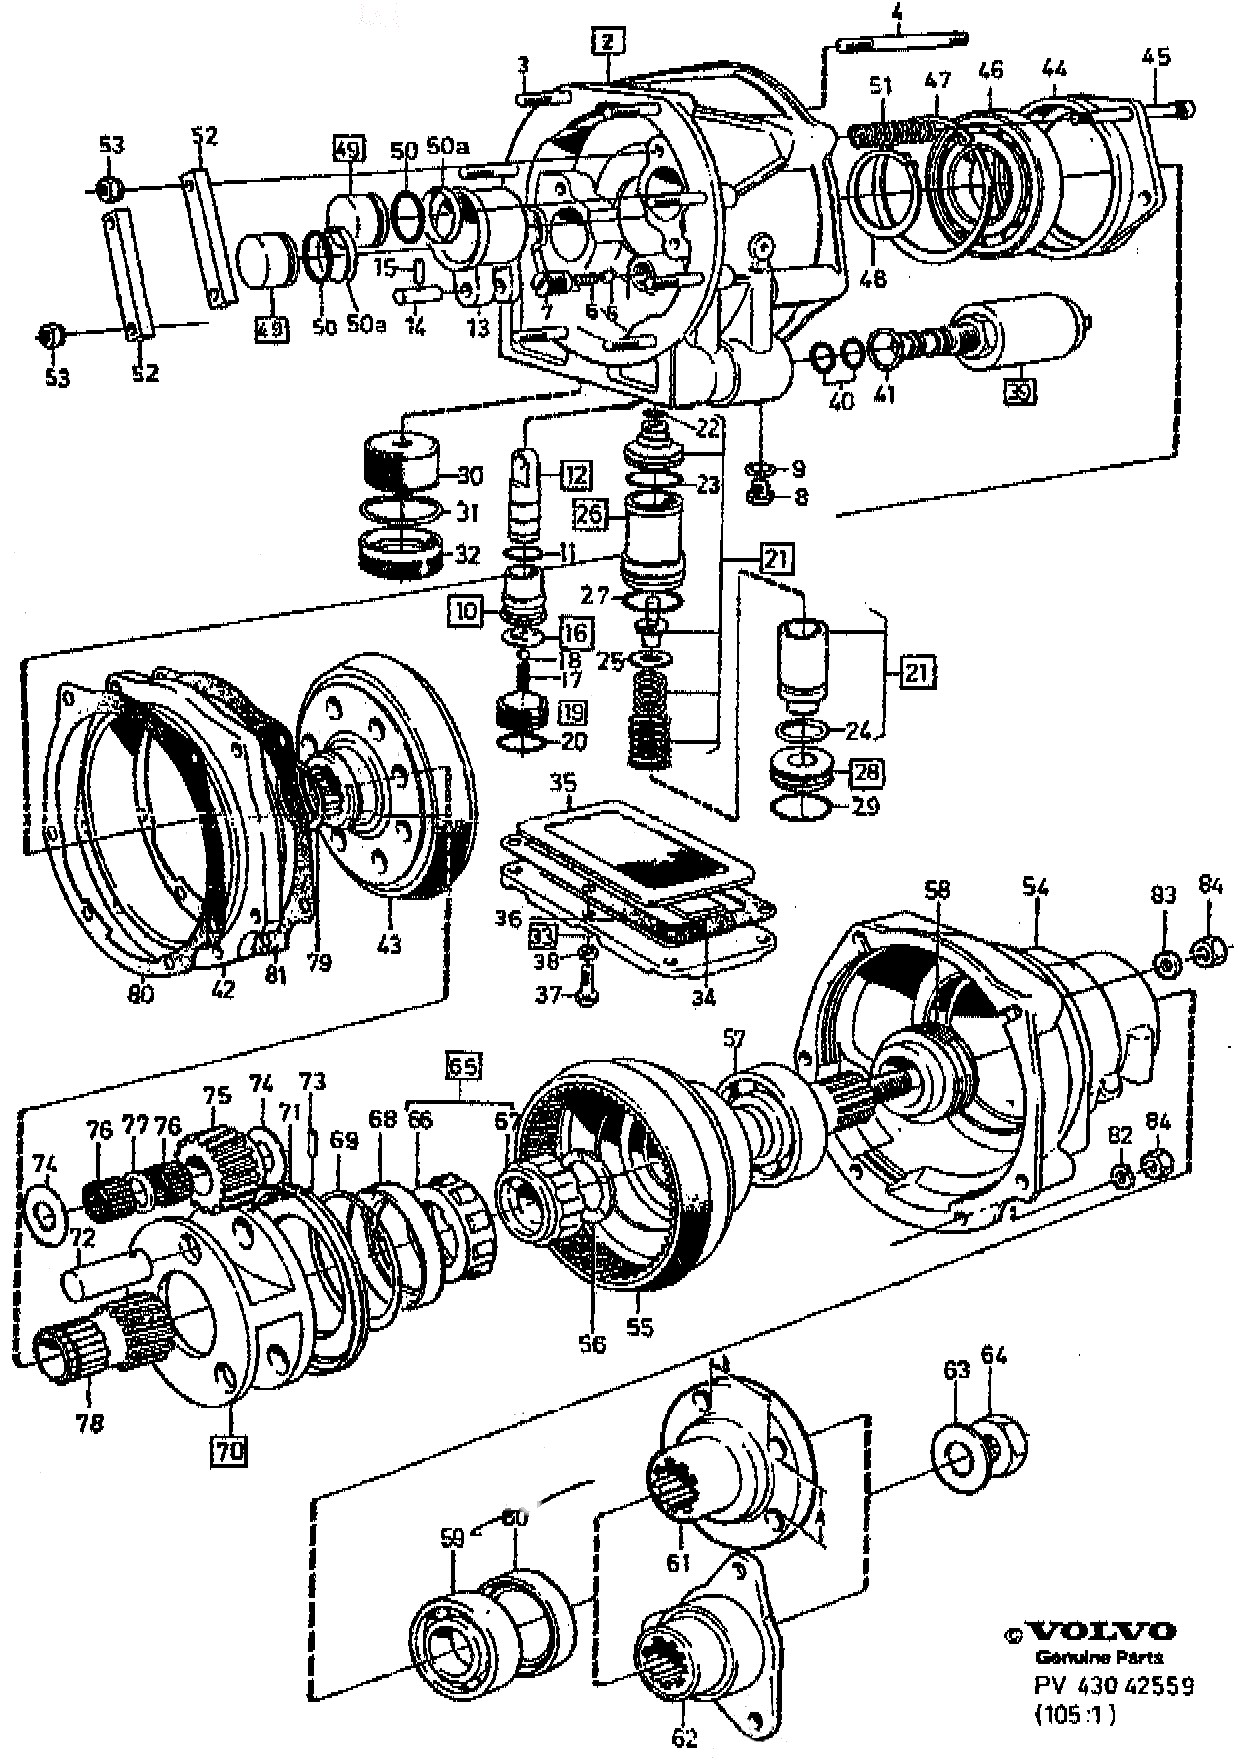 Car Wheel Parts Diagram Volvo Parts Diagrams Wiring Diagram Dash Of Car Wheel Parts Diagram